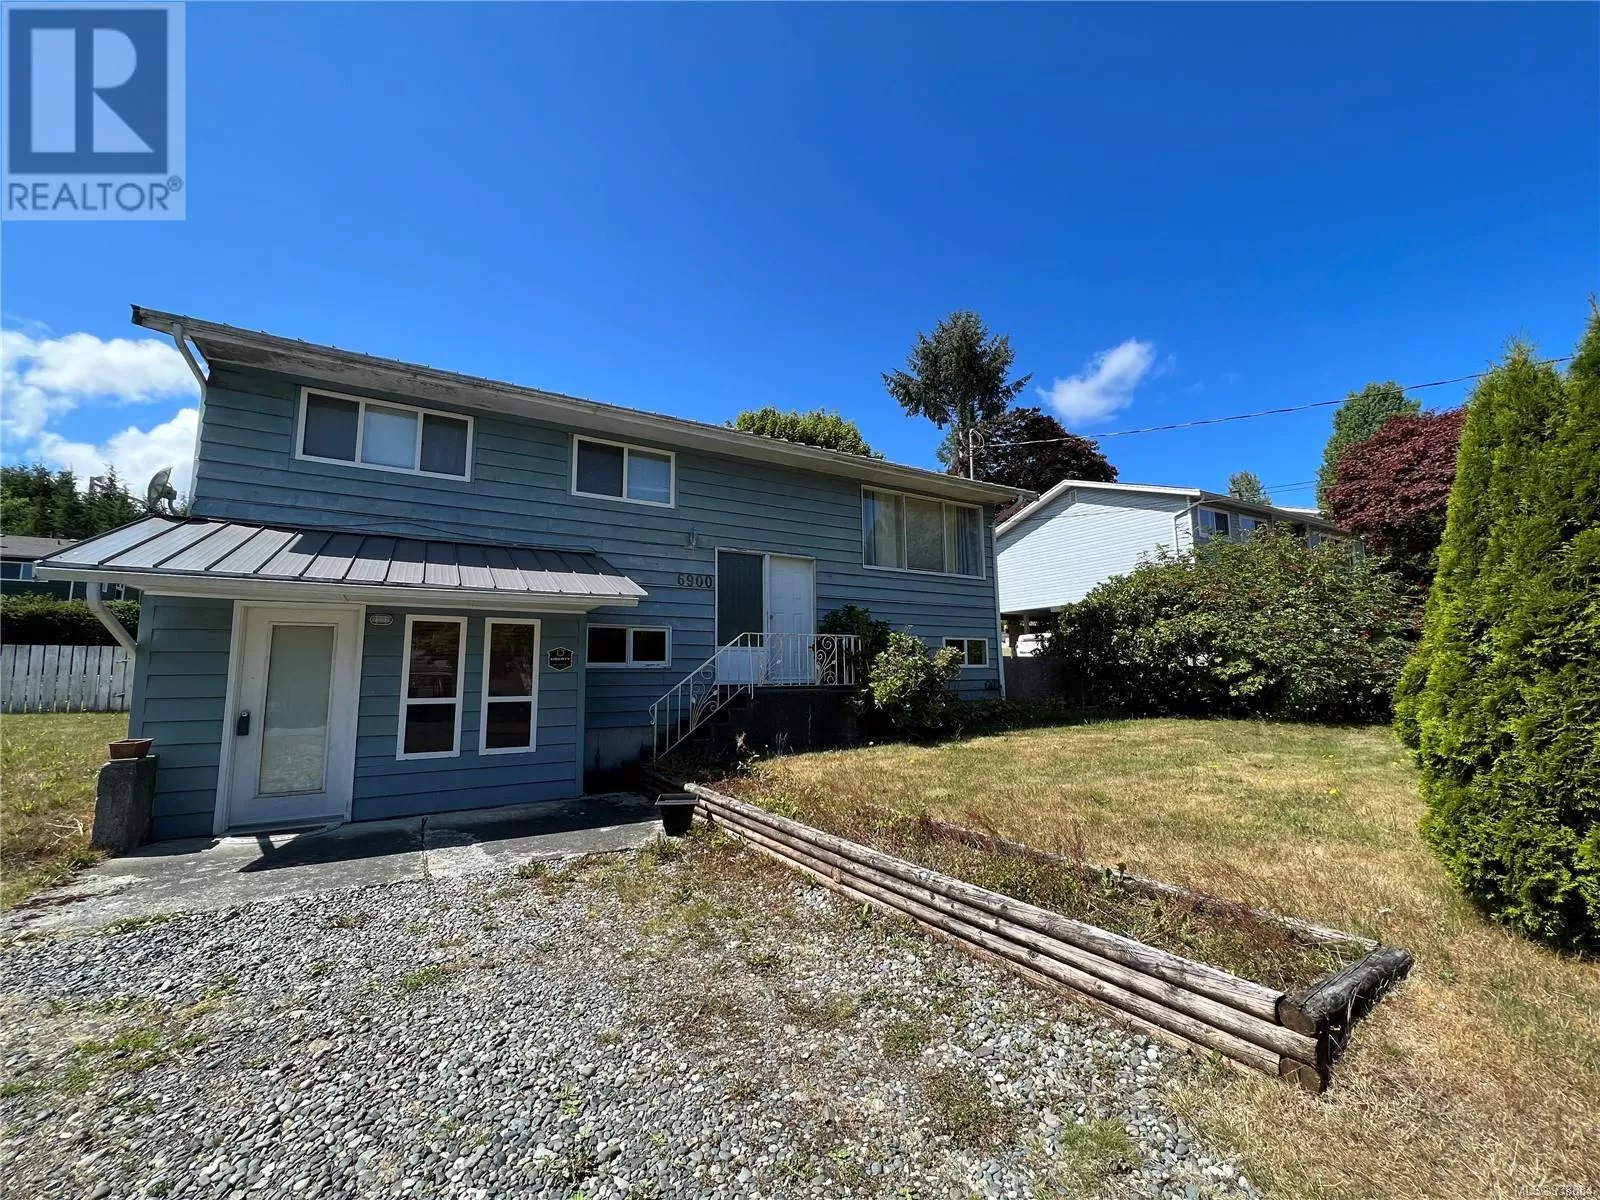 House for rent: 6900 Glenlion Dr, Port Hardy, British Columbia V0N 2P0